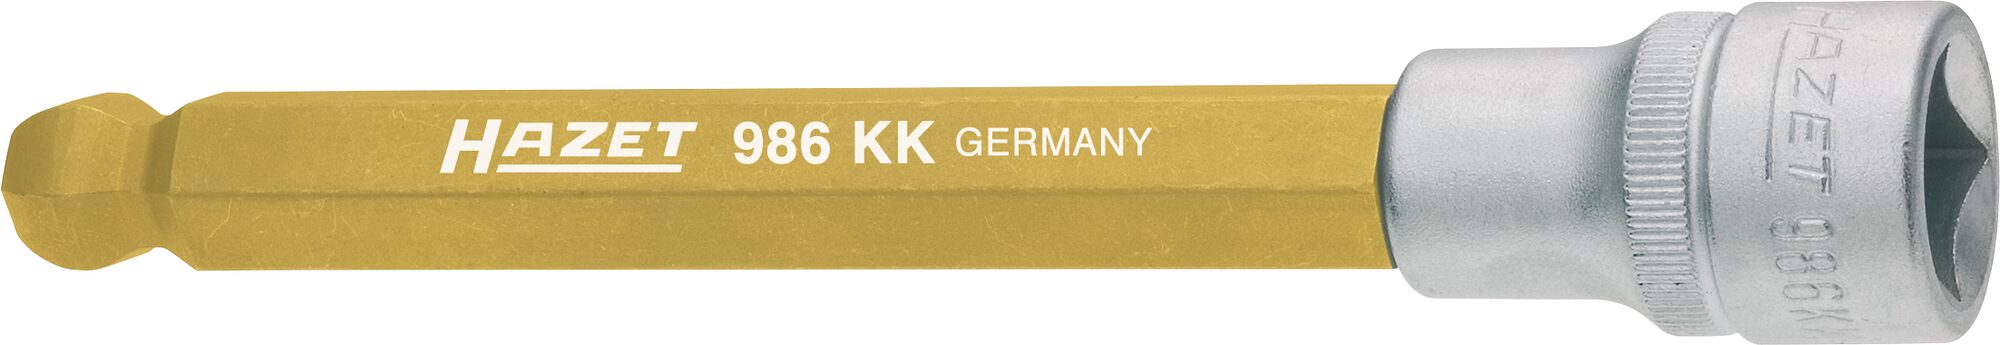 HAZET Schraubendreher-Steckschlüsseleinsatz 986KK-12 ∙ Vierkant12,5 mm (1/2 Zoll) ∙ Innen-Sechskant Profil ∙ 12 mm